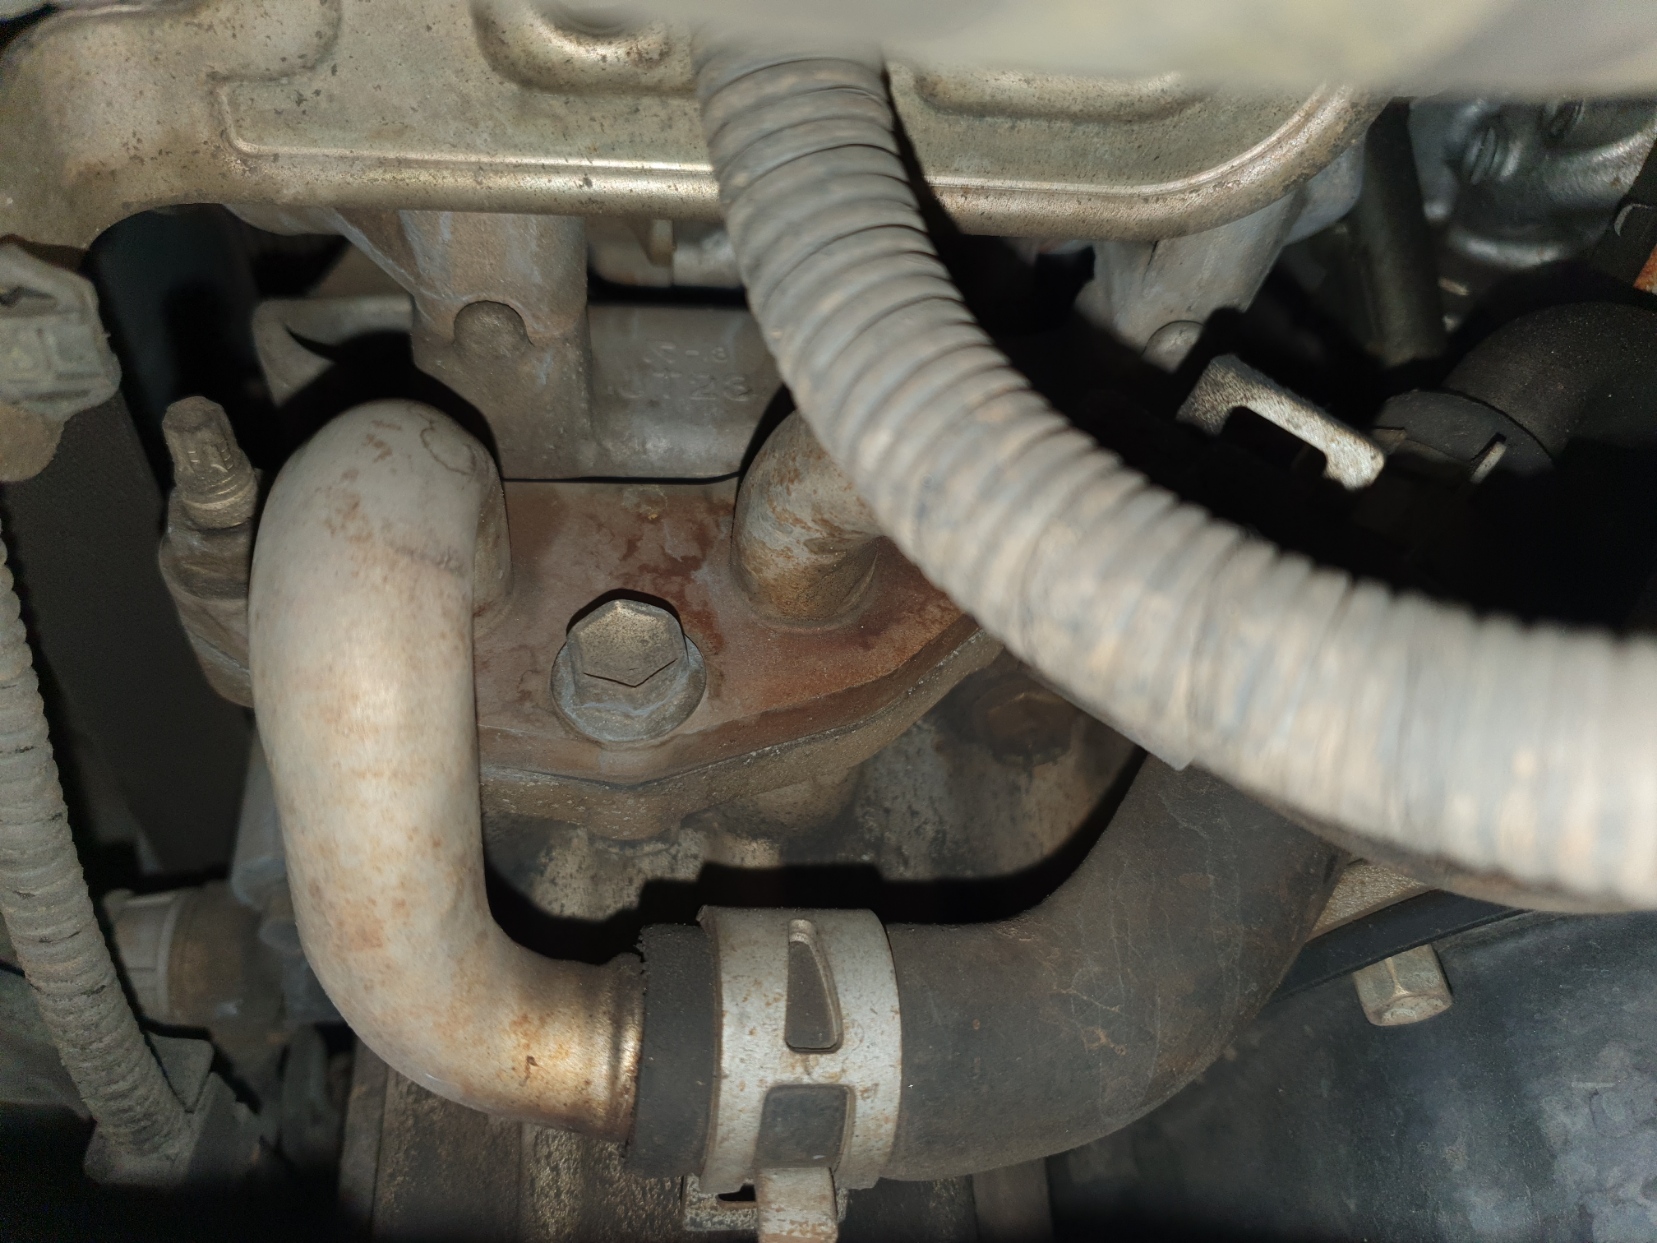 2010 Kluger oil leak - rear of engine - Kluger - Toyota Owners Club 2006 6.0 Powerstroke Oil Leak Rear Of Engine